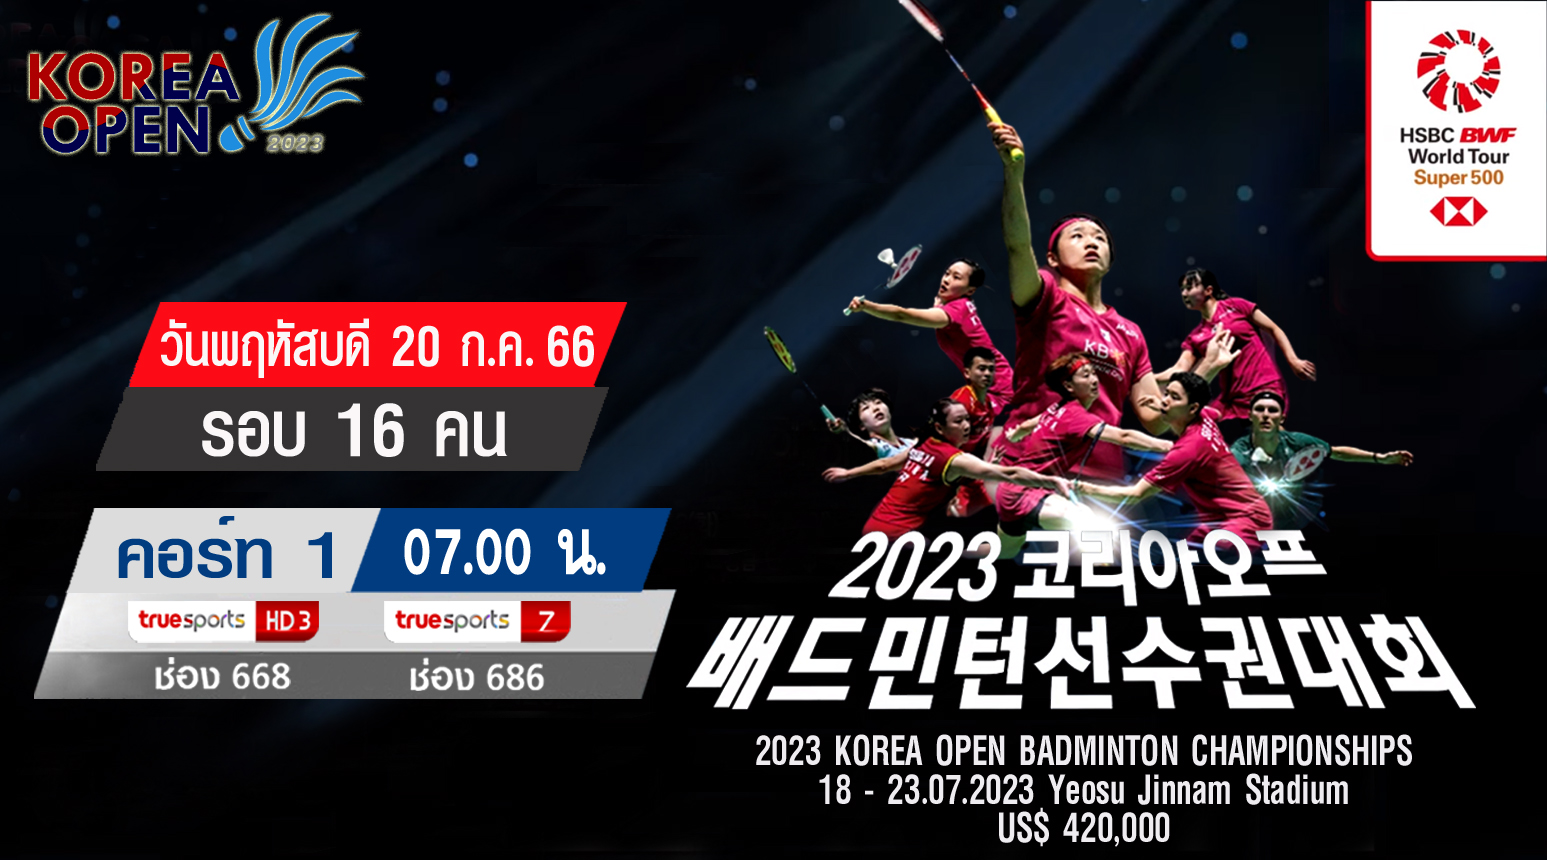 เชียร์สด ! แบดมินตัน Korea Open 2023 รอบ 16 คน 20 ก.ค